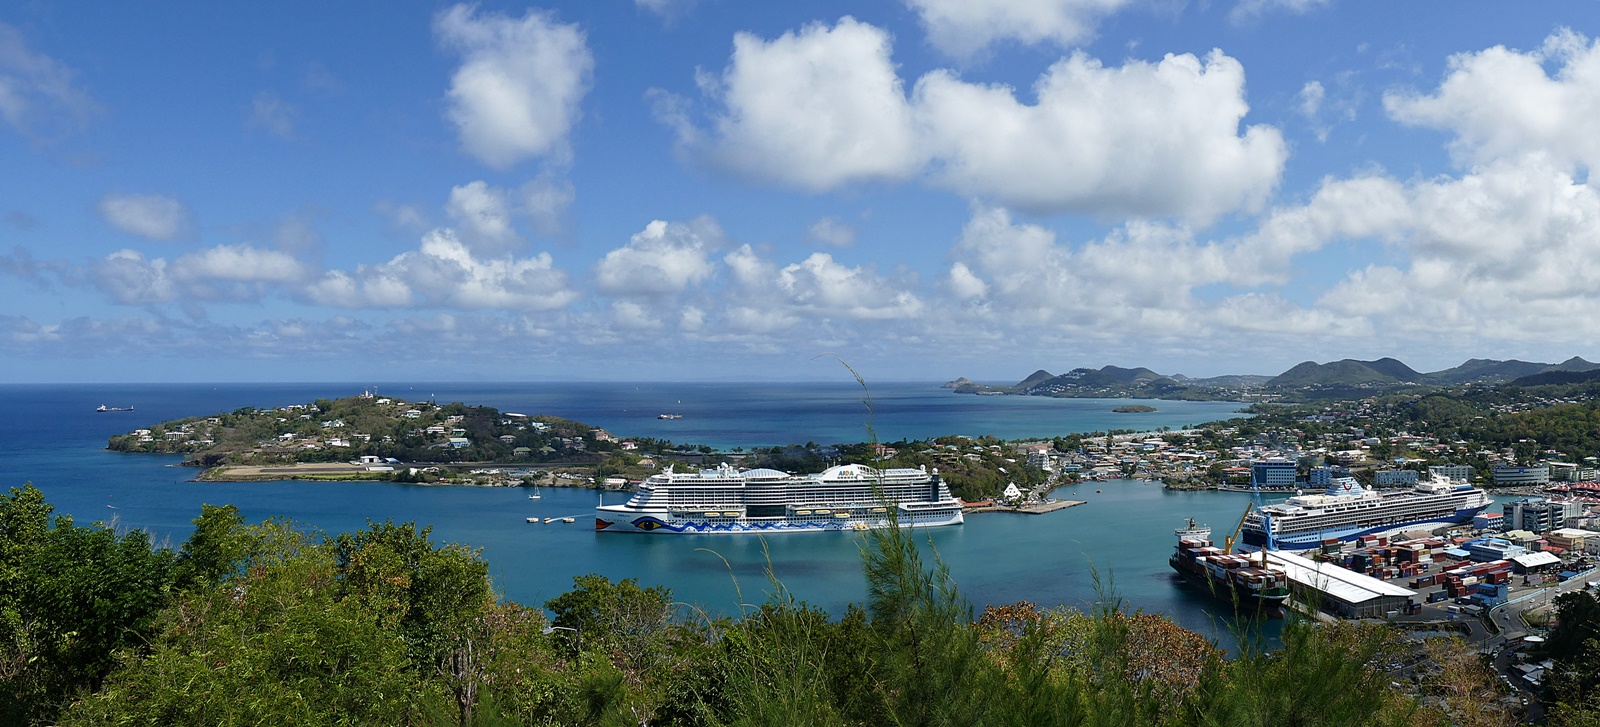 Hafen von St. Lucia!